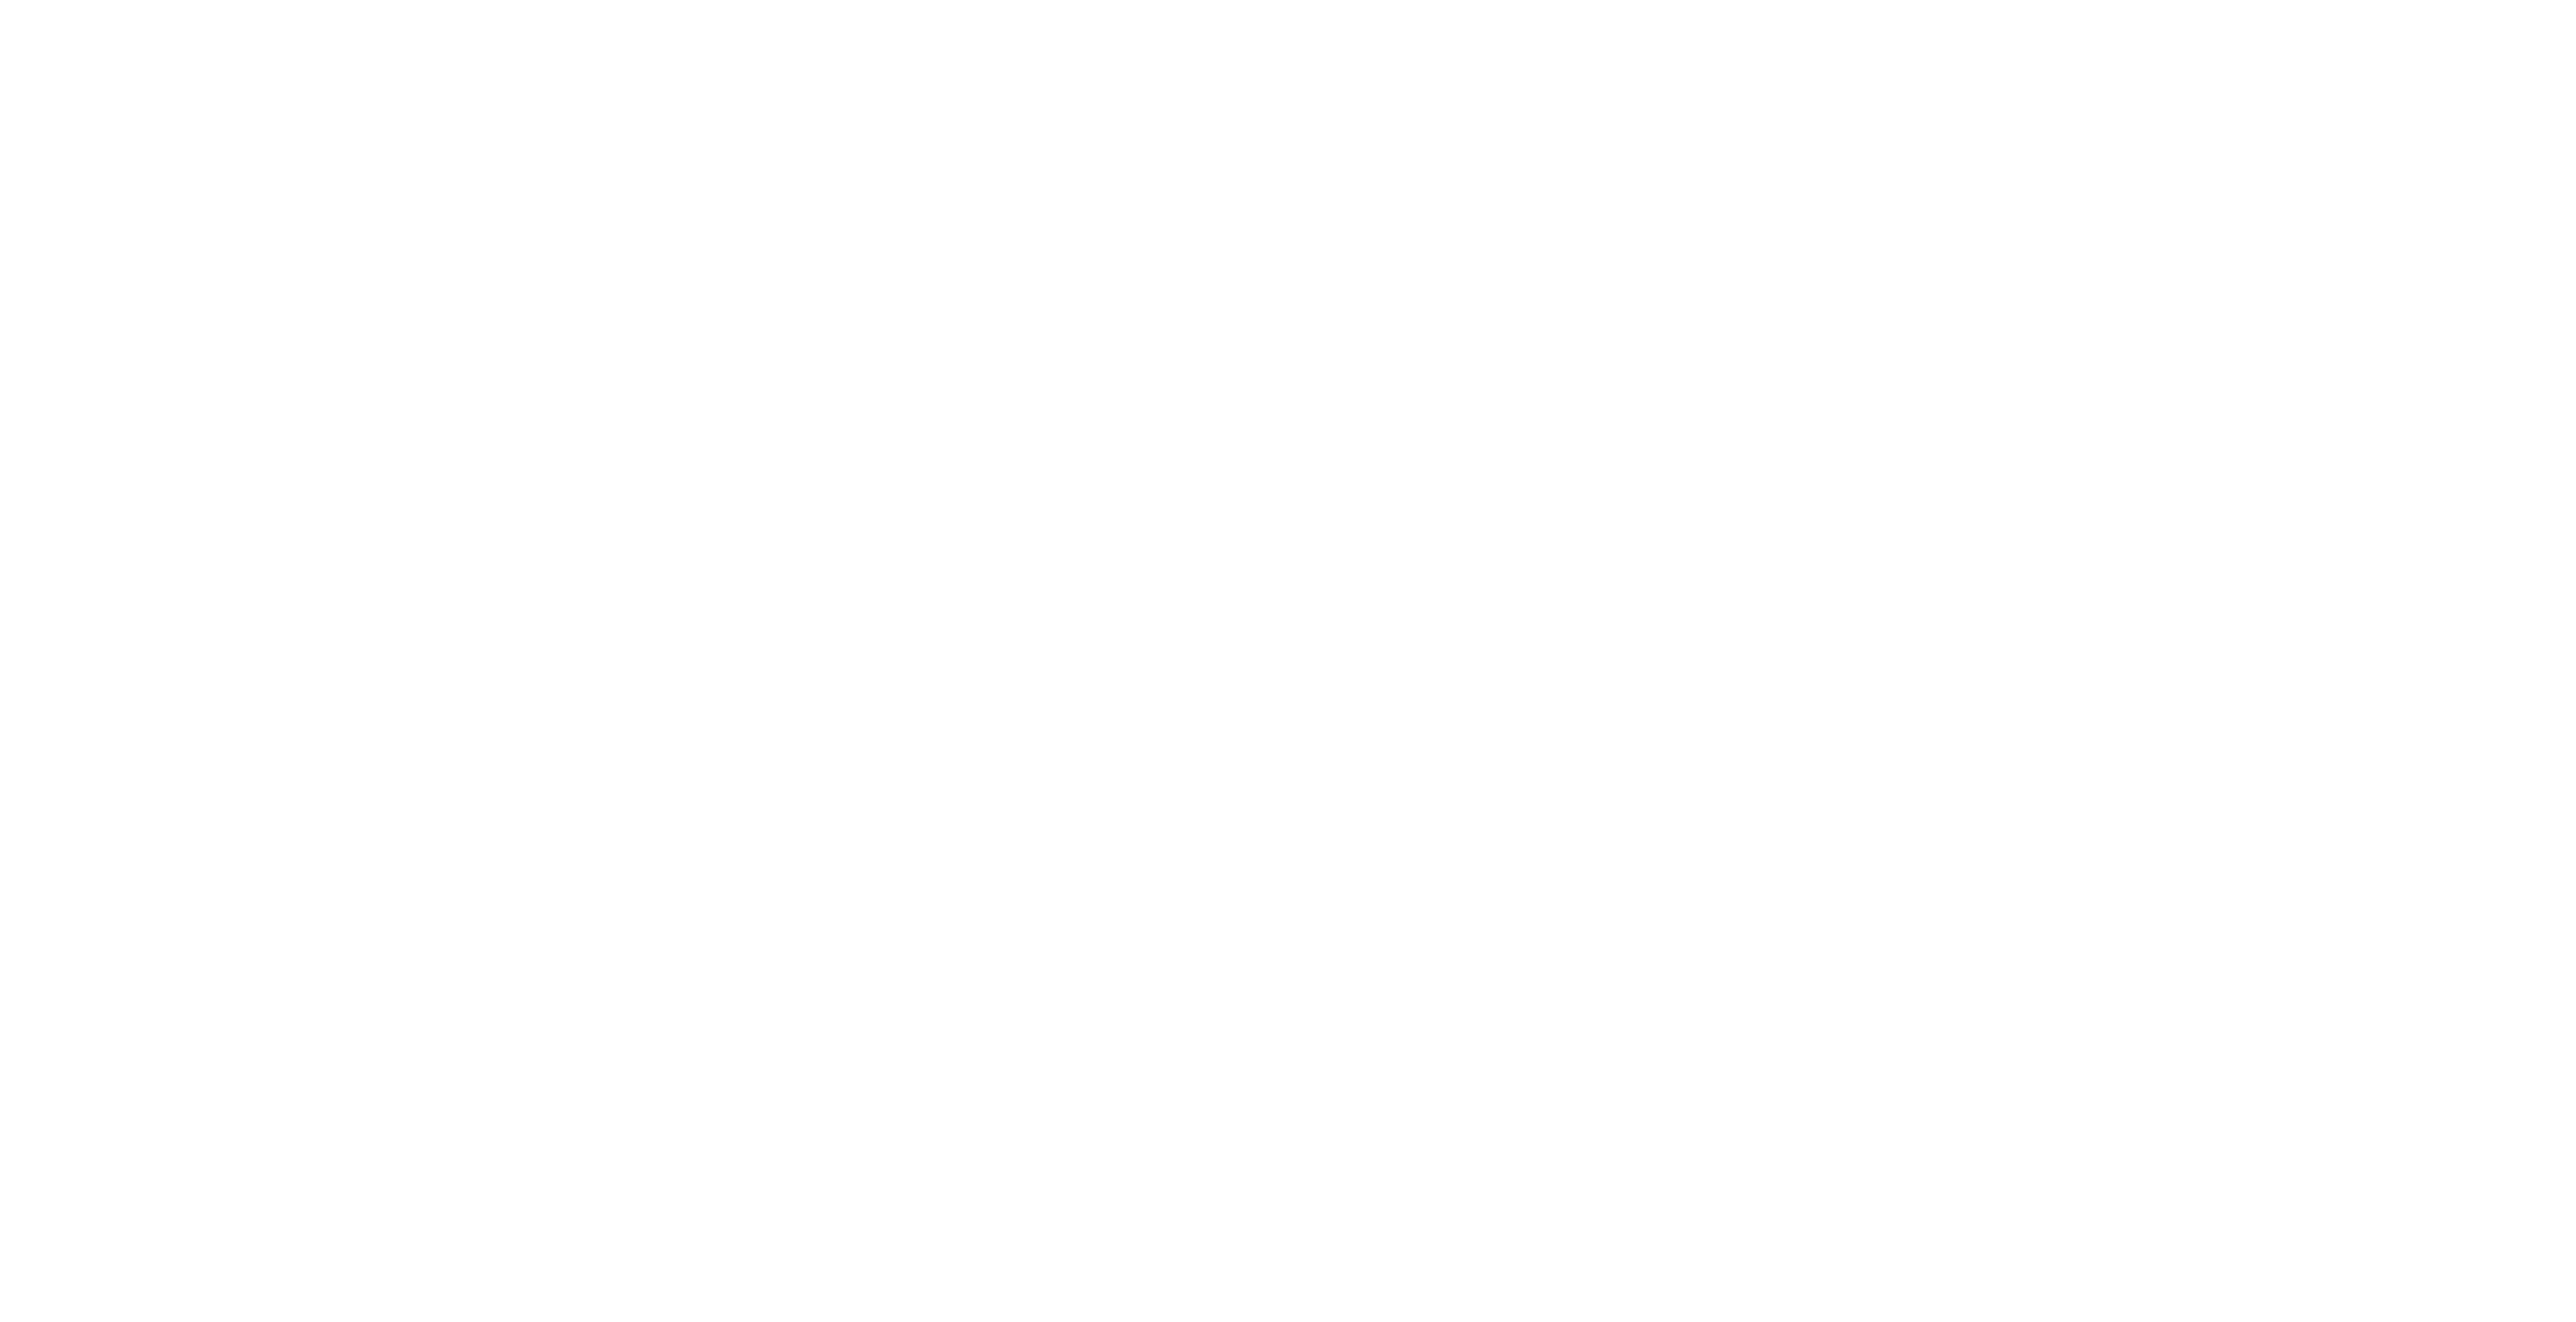 Raamfolie Specialist